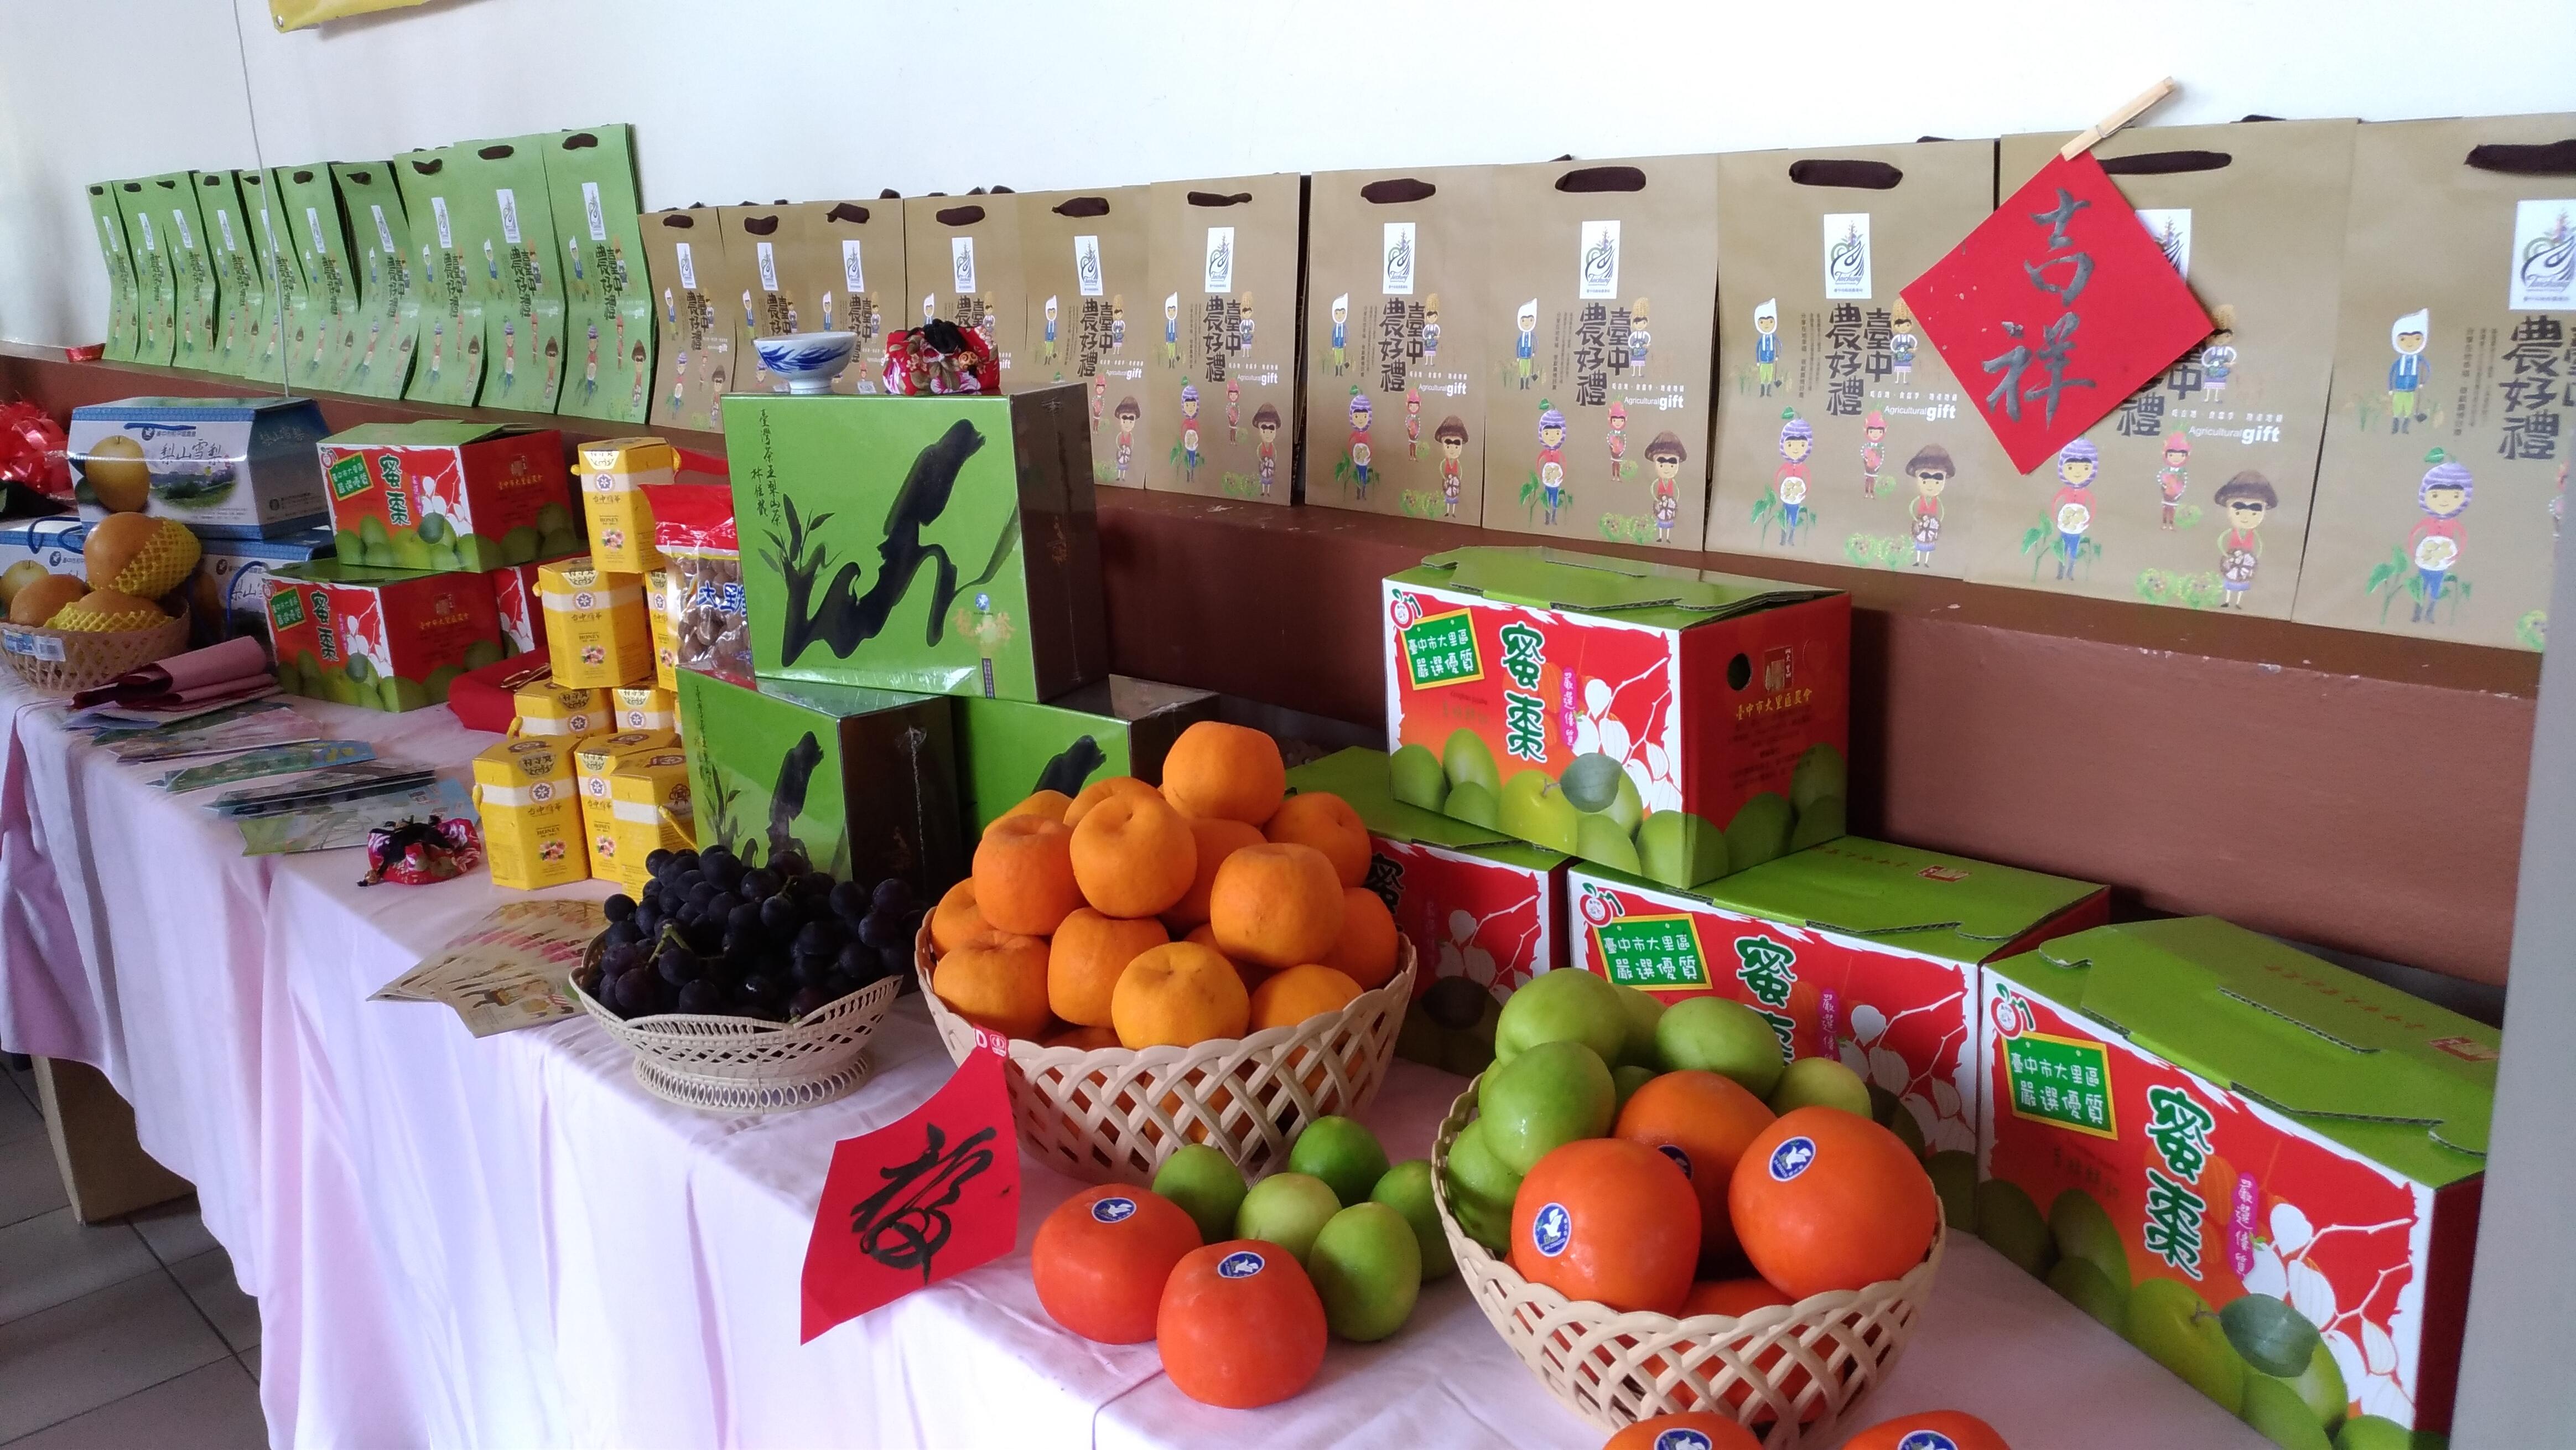 現場展示推廣臺中特產雪梨、蜜棗、甜柿、葡萄、草莓、茶葉等多項農產品。